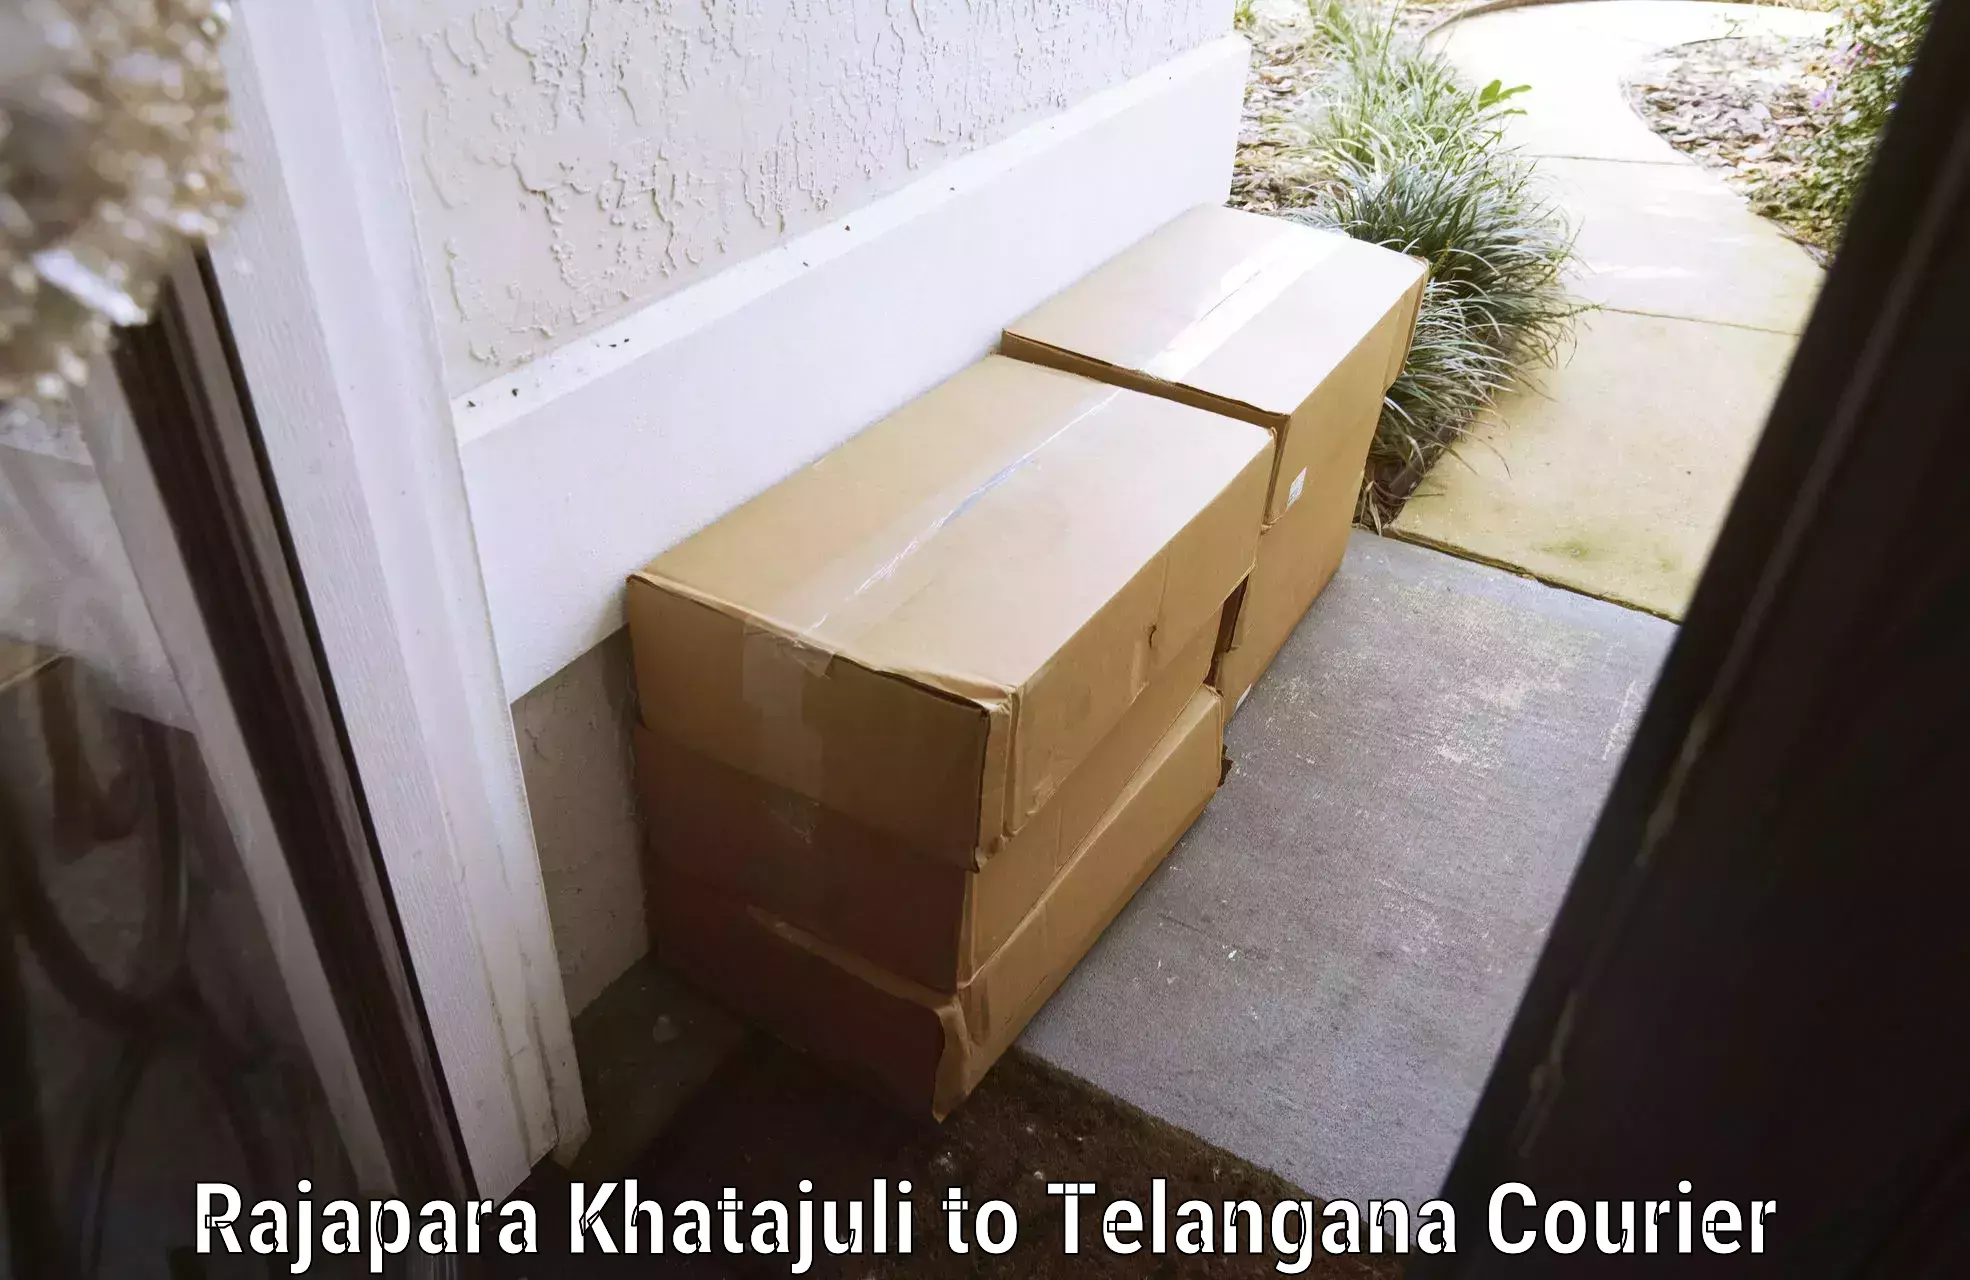 Luggage delivery system Rajapara Khatajuli to Manthani